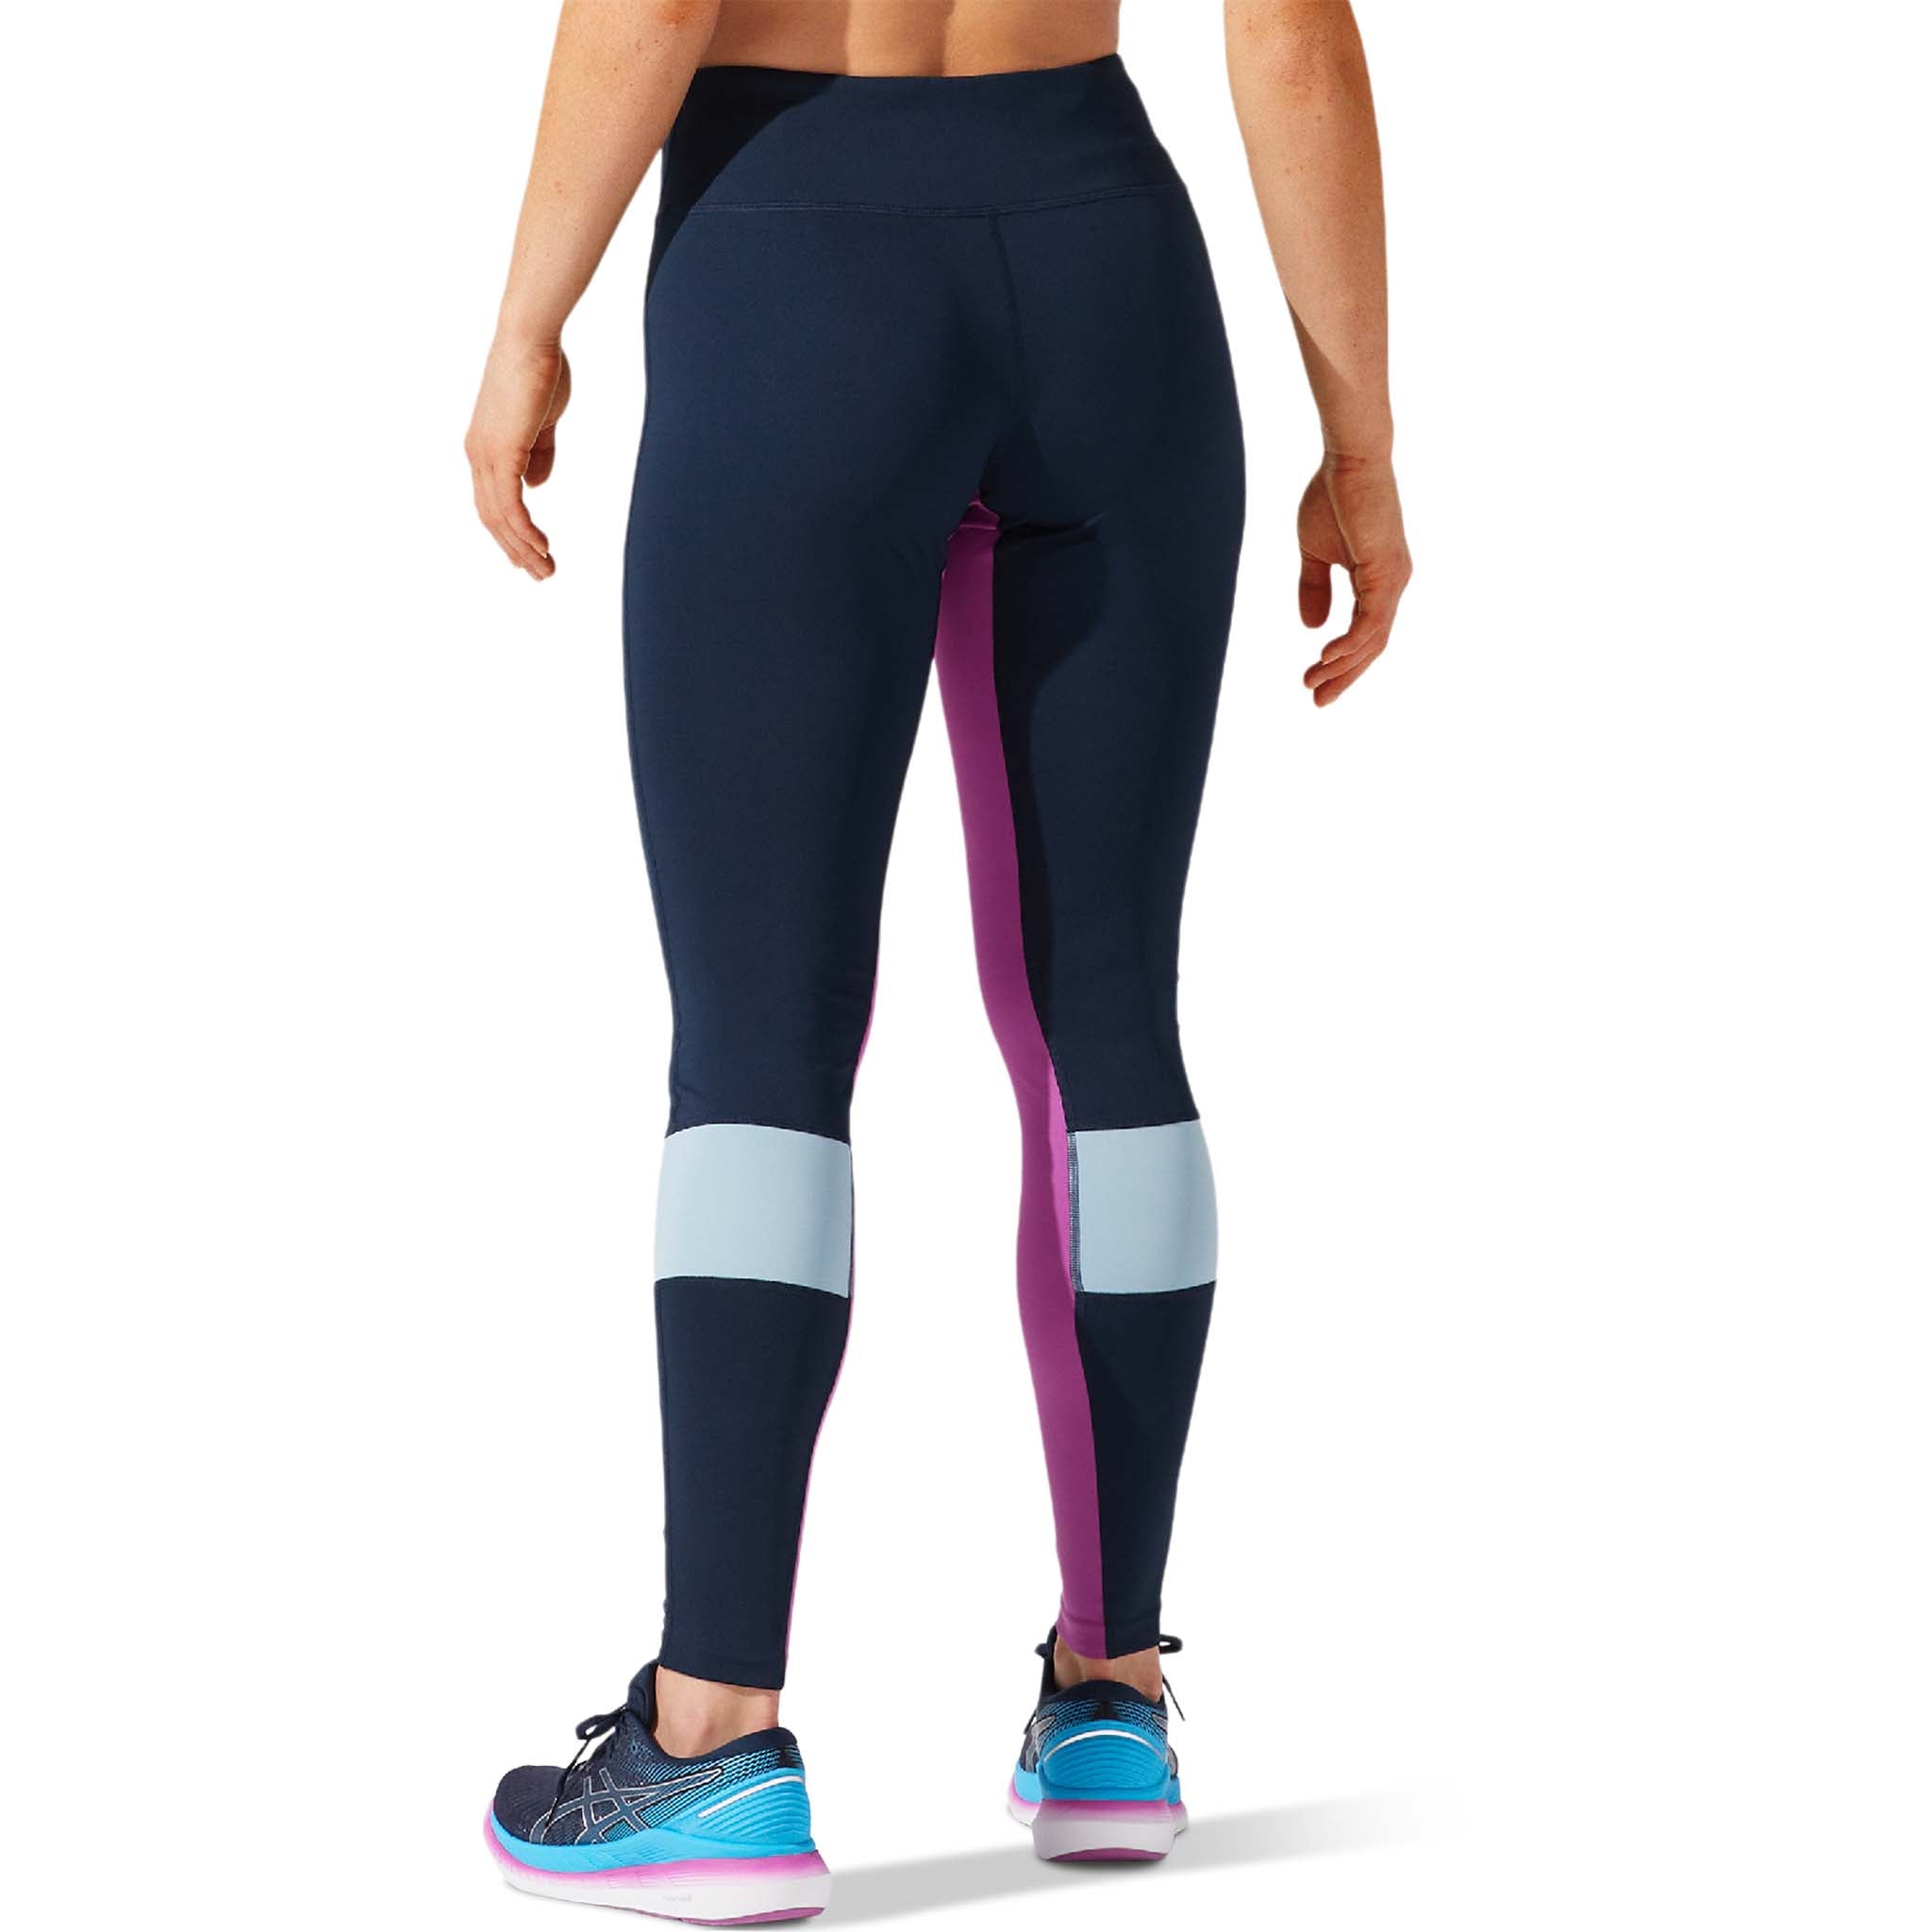 ASICS Visibility running legging for women – Soccer Sport Fitness